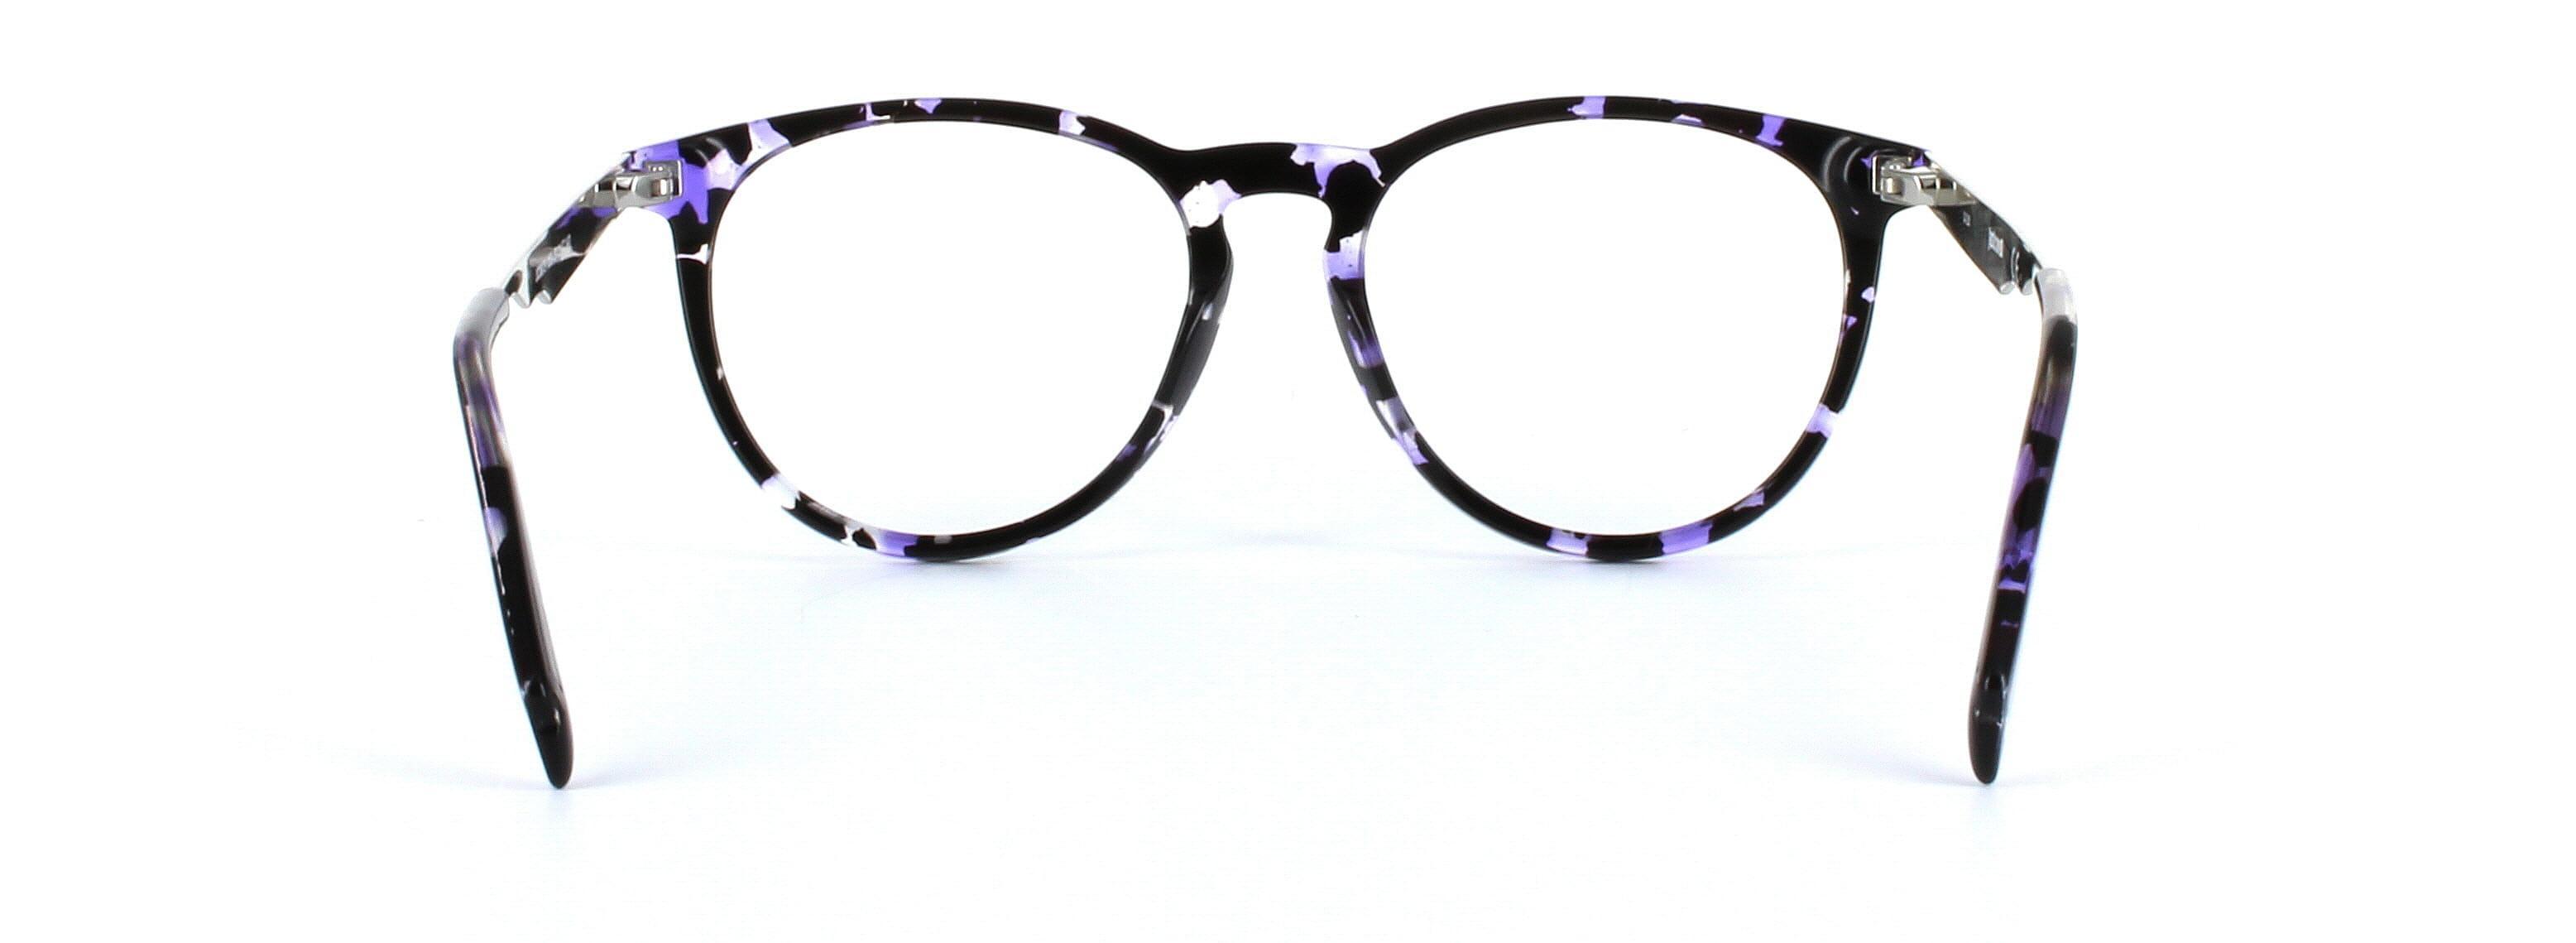 JUST CAVALLI (JC0879-055) Black and Purple Full Rim Round Acetate Glasses - Image View 3